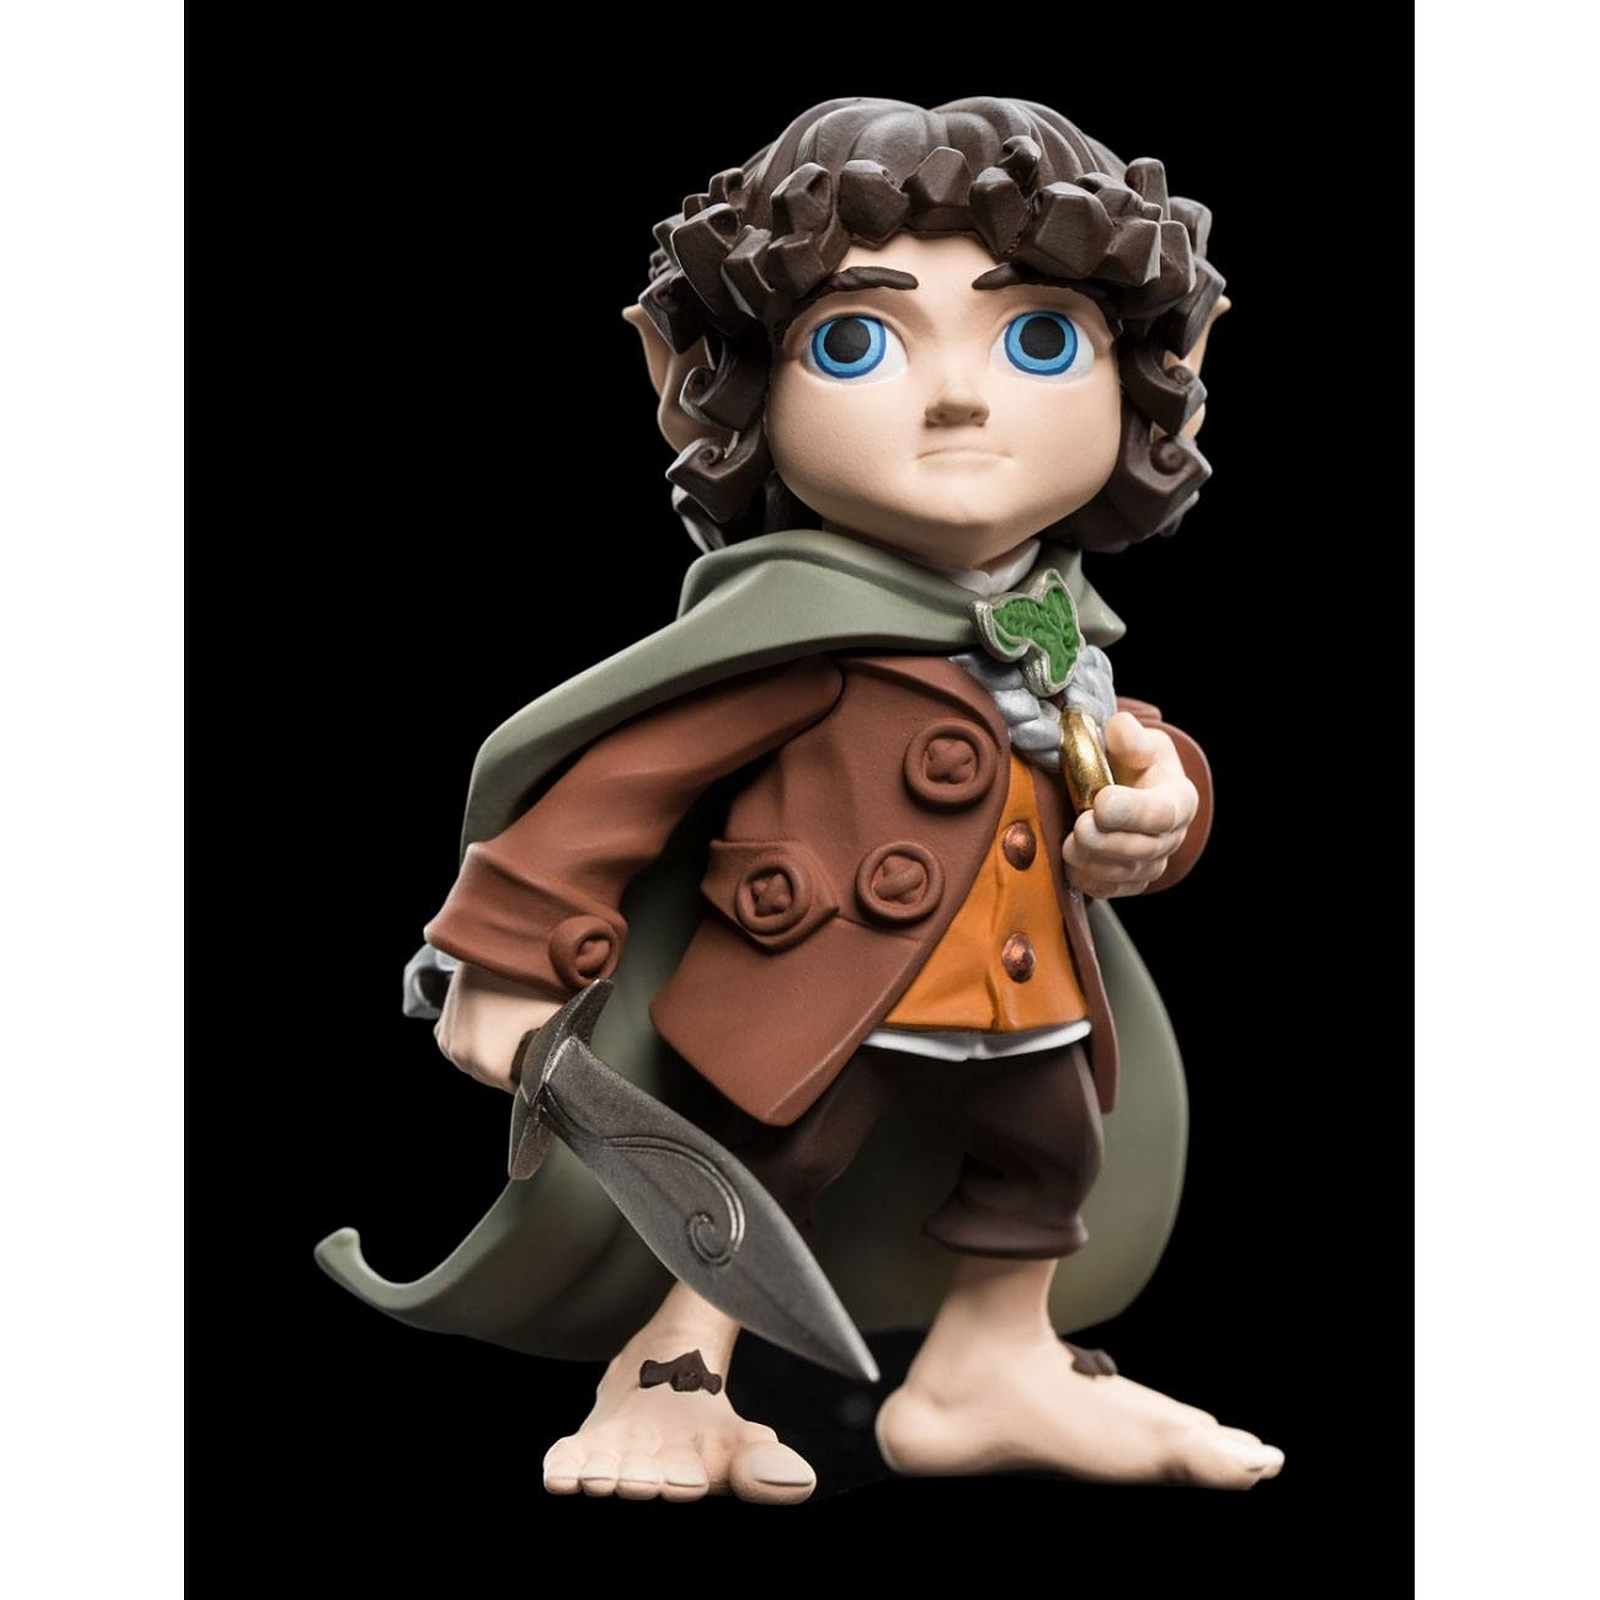 Le Seigneur des Anneaux - Figurine Mini Epics Frodo Baggins 11 cm - Figurines Weta Collectibles